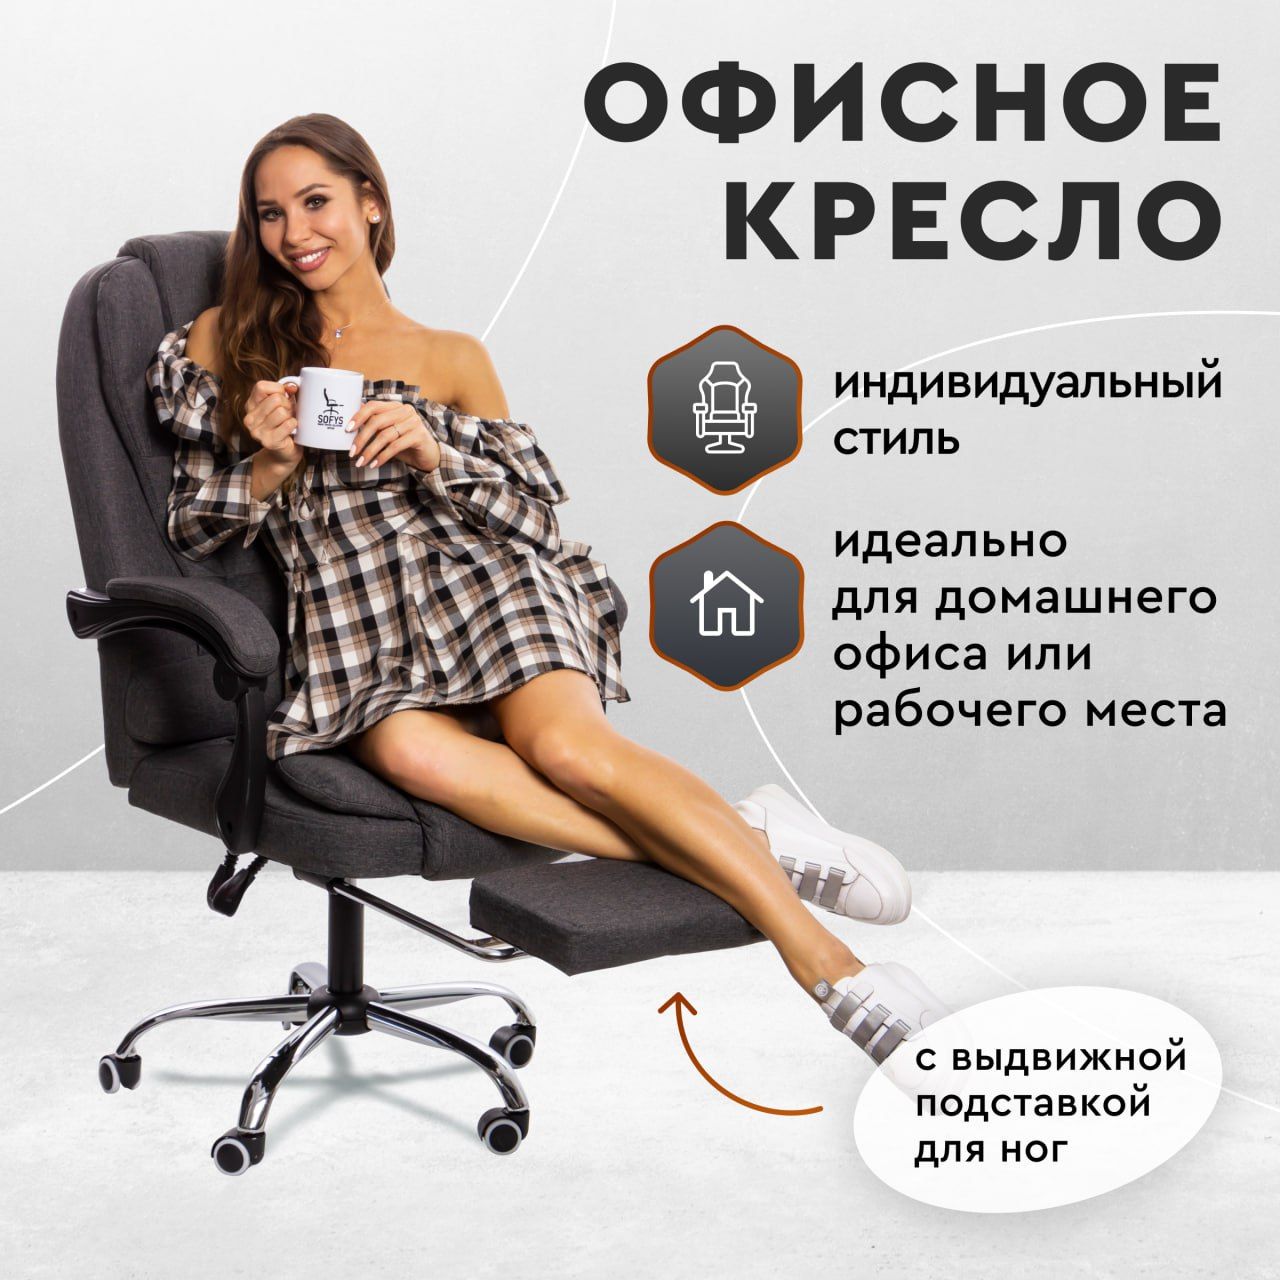 Коврик под компьютерный стул купить в Минске, цены на защитные коврики для стула на колесиках